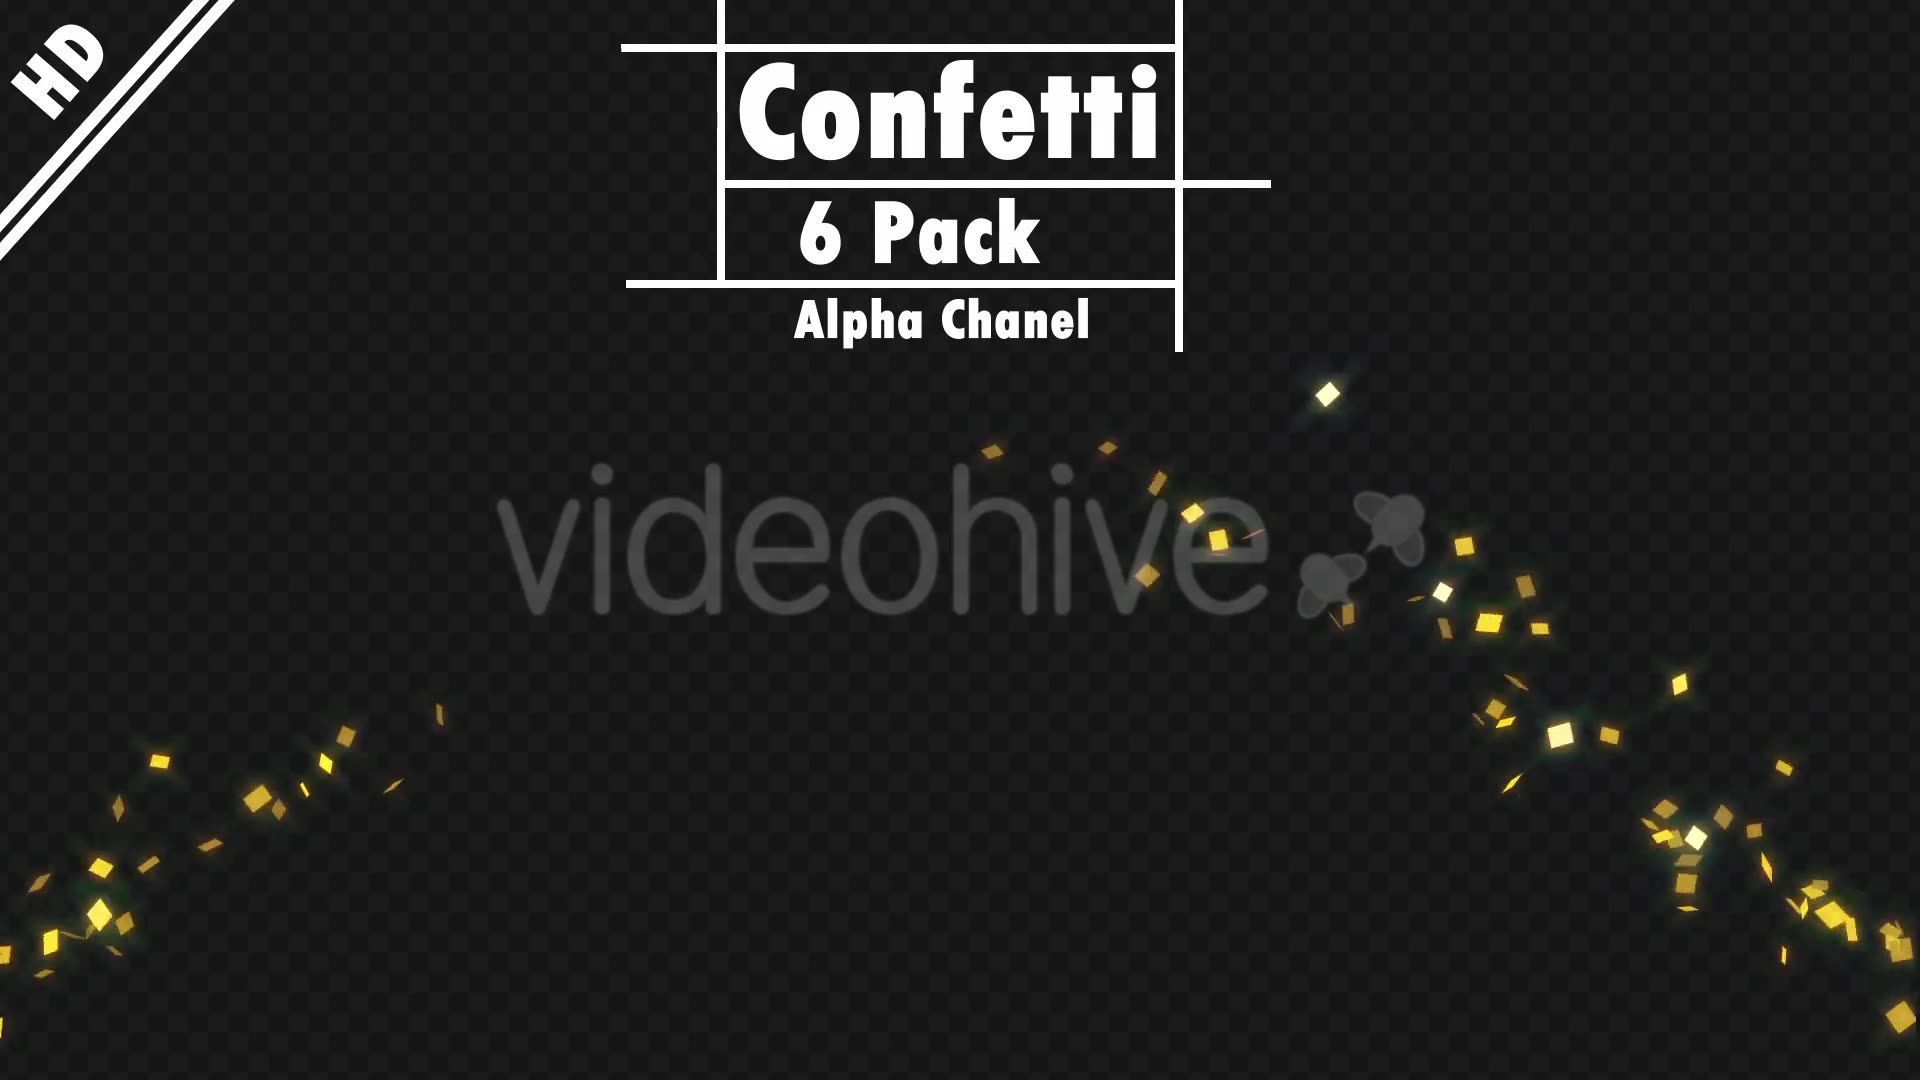 Confetti Videohive 20324822 Motion Graphics Image 8